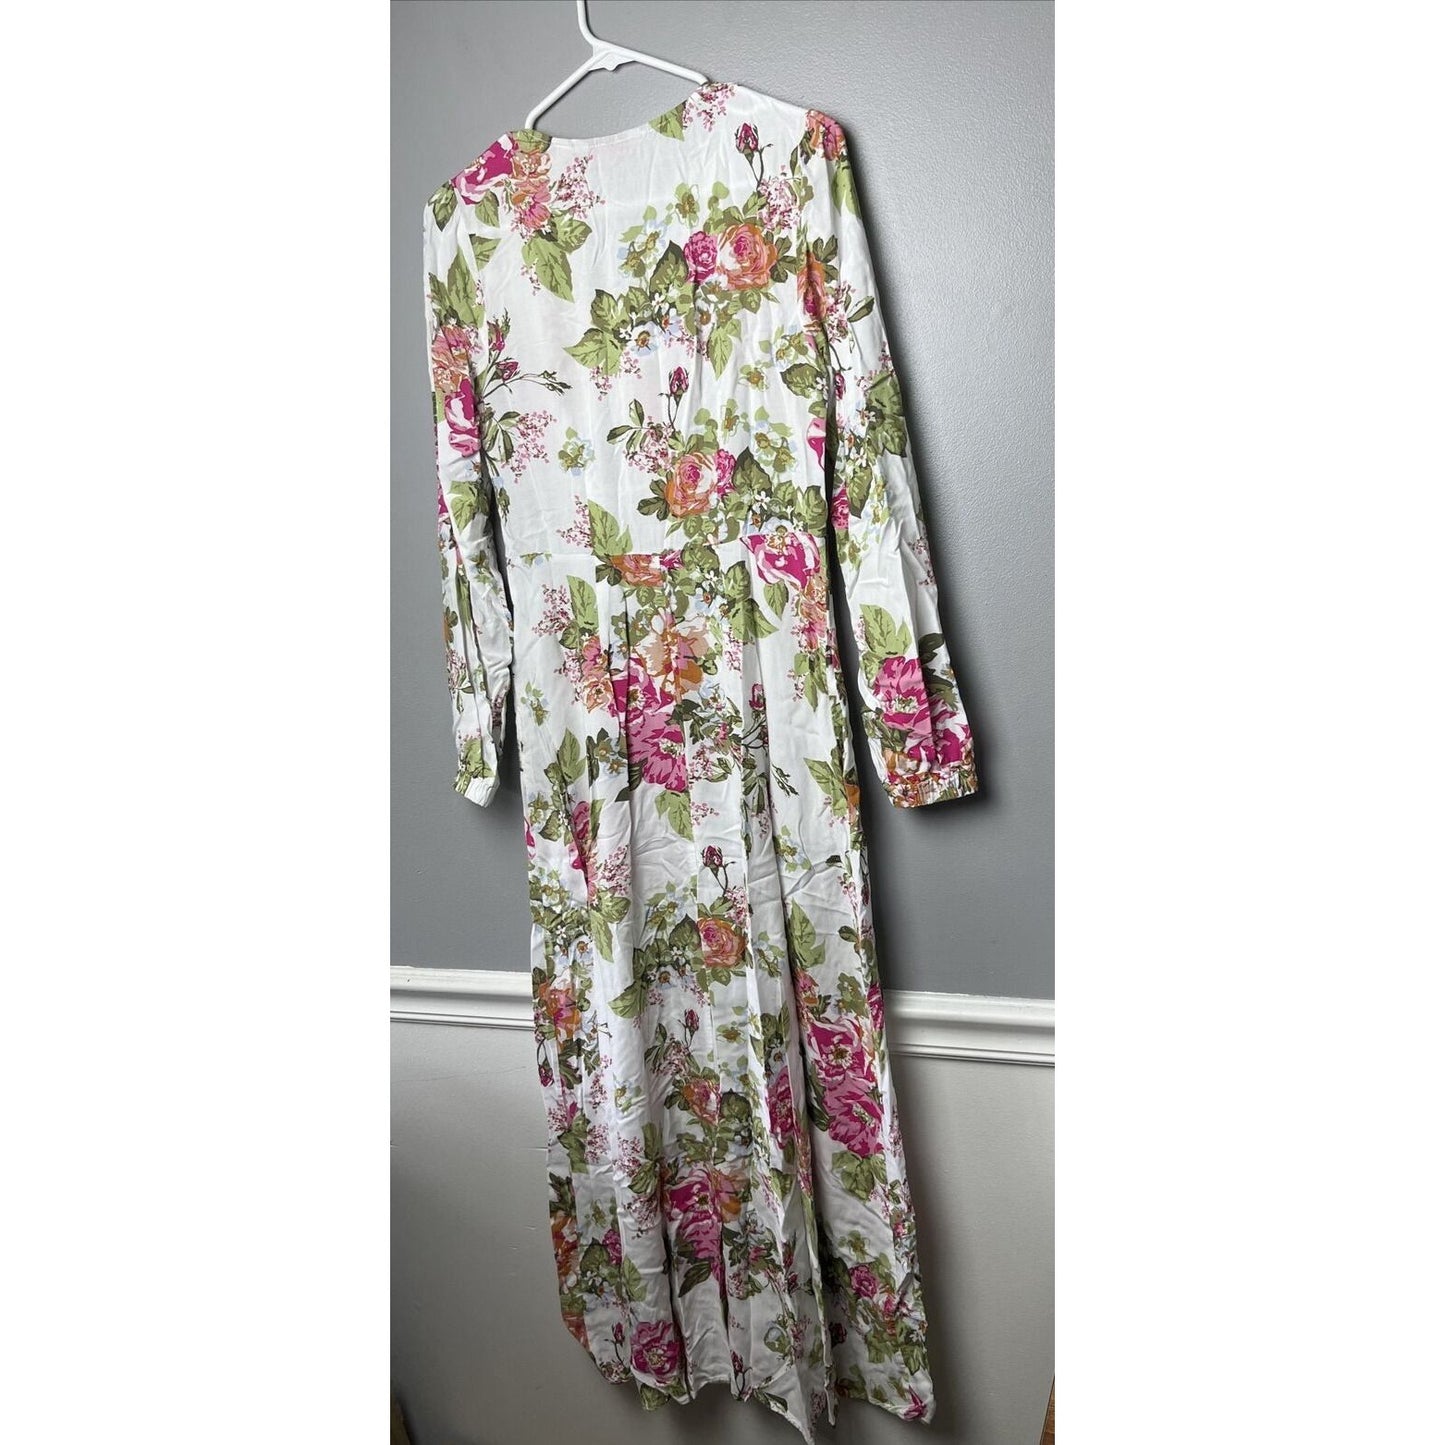 Laurie Felt Regular Long Sleeve Maxi Dress-Pink Floral-Reg 4-NEW-A377562